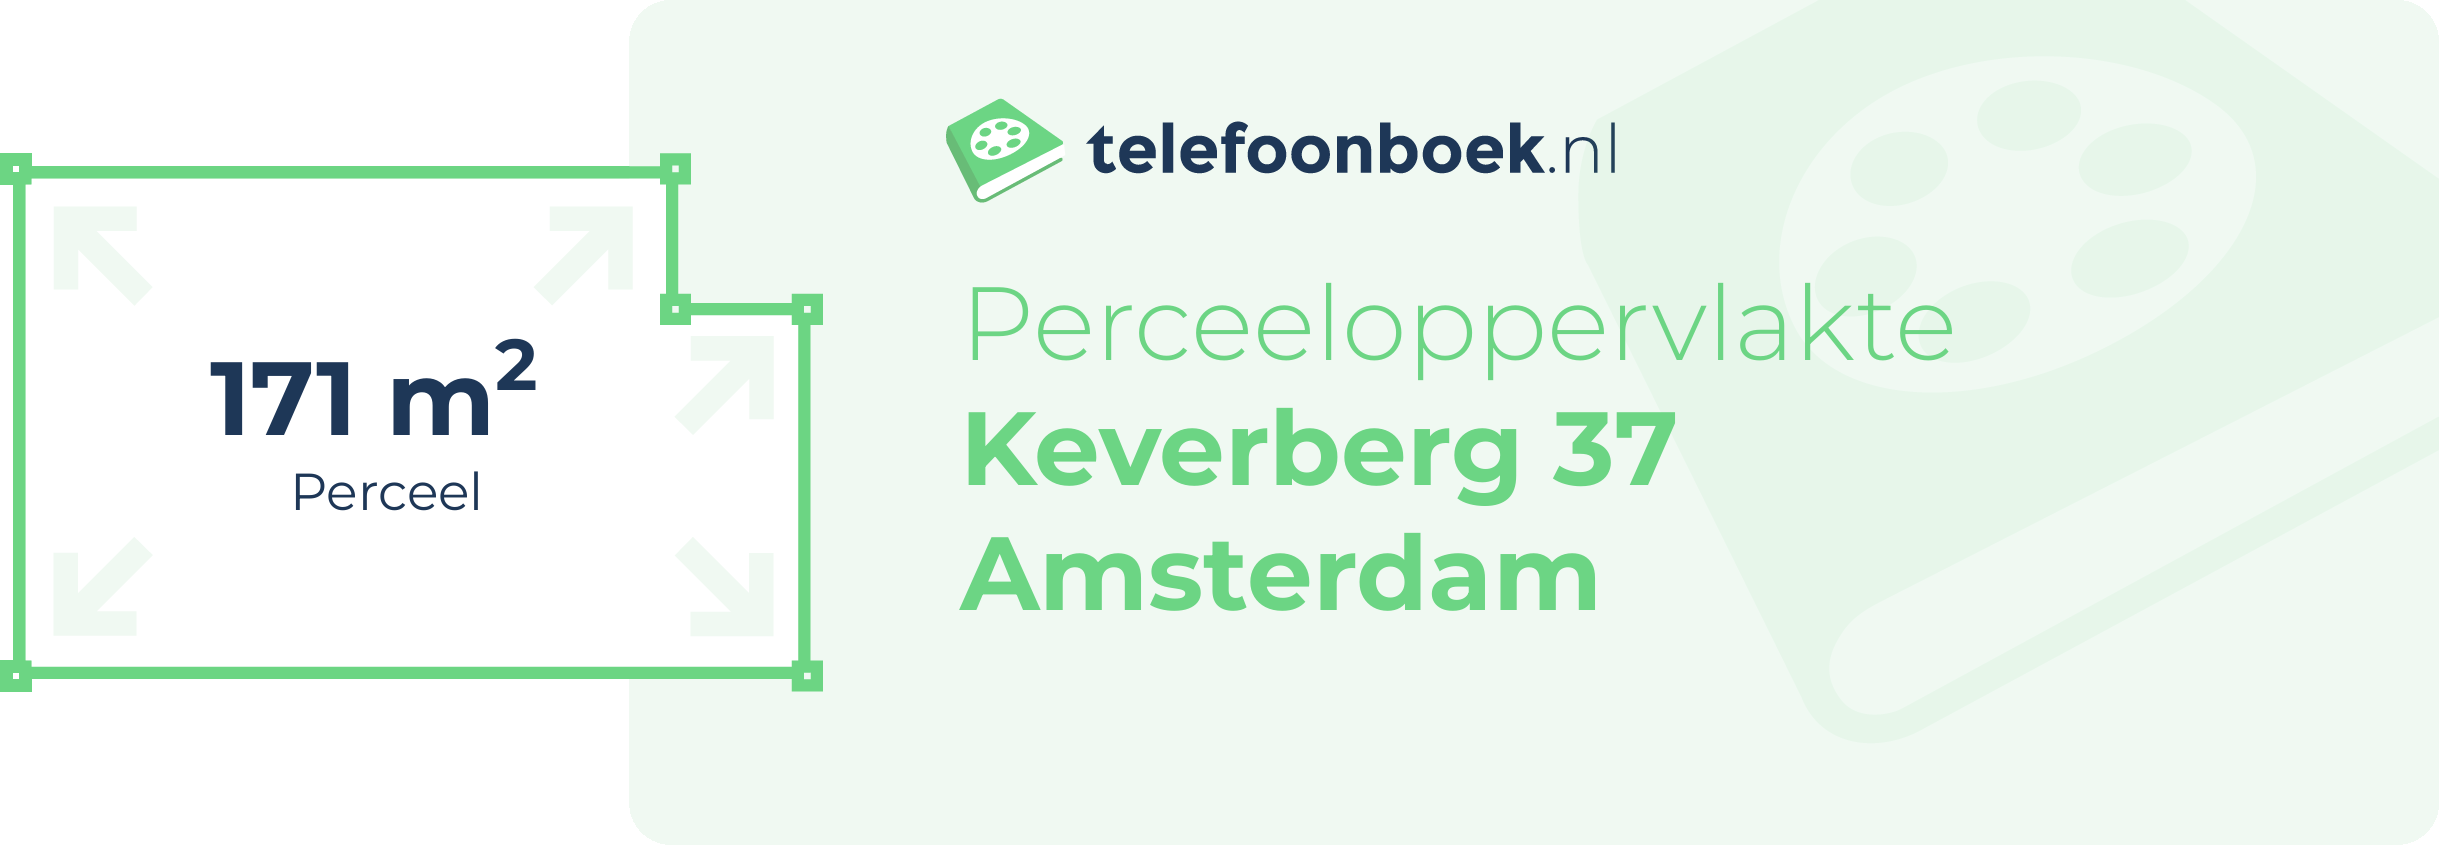 Perceeloppervlakte Keverberg 37 Amsterdam